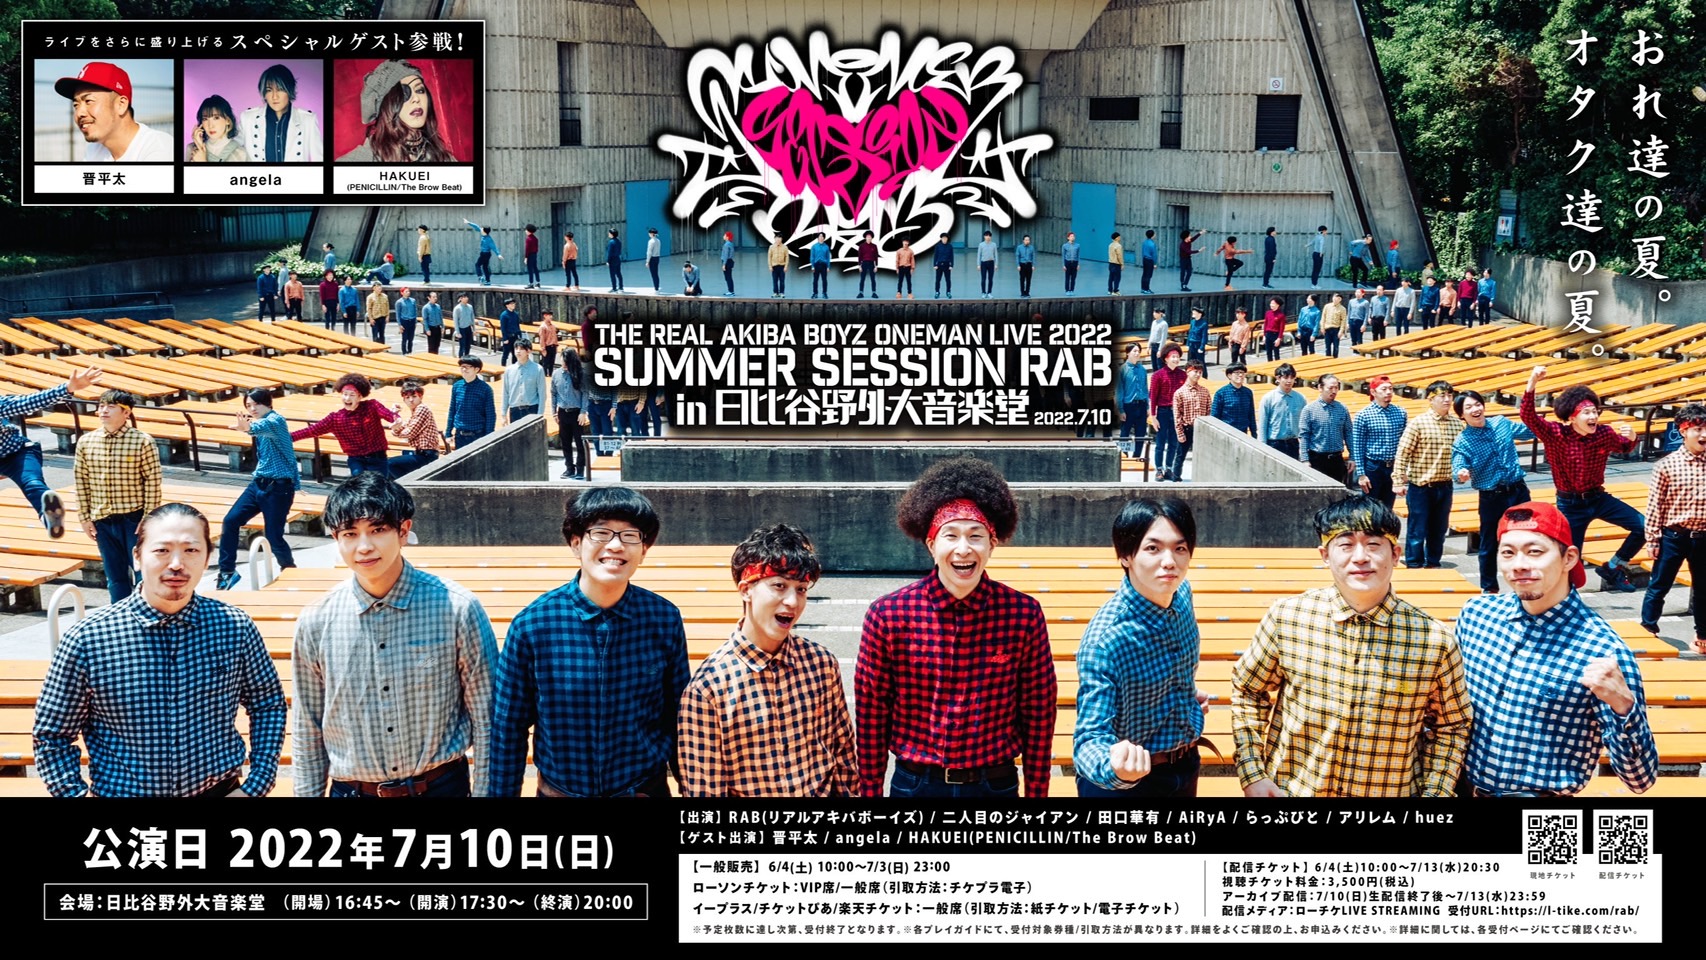 7月10日 SUMMER SESSION RAB IN 日比谷野外大音楽堂公演決定！ | REAL AKIBA BOYZ Official Web  Site